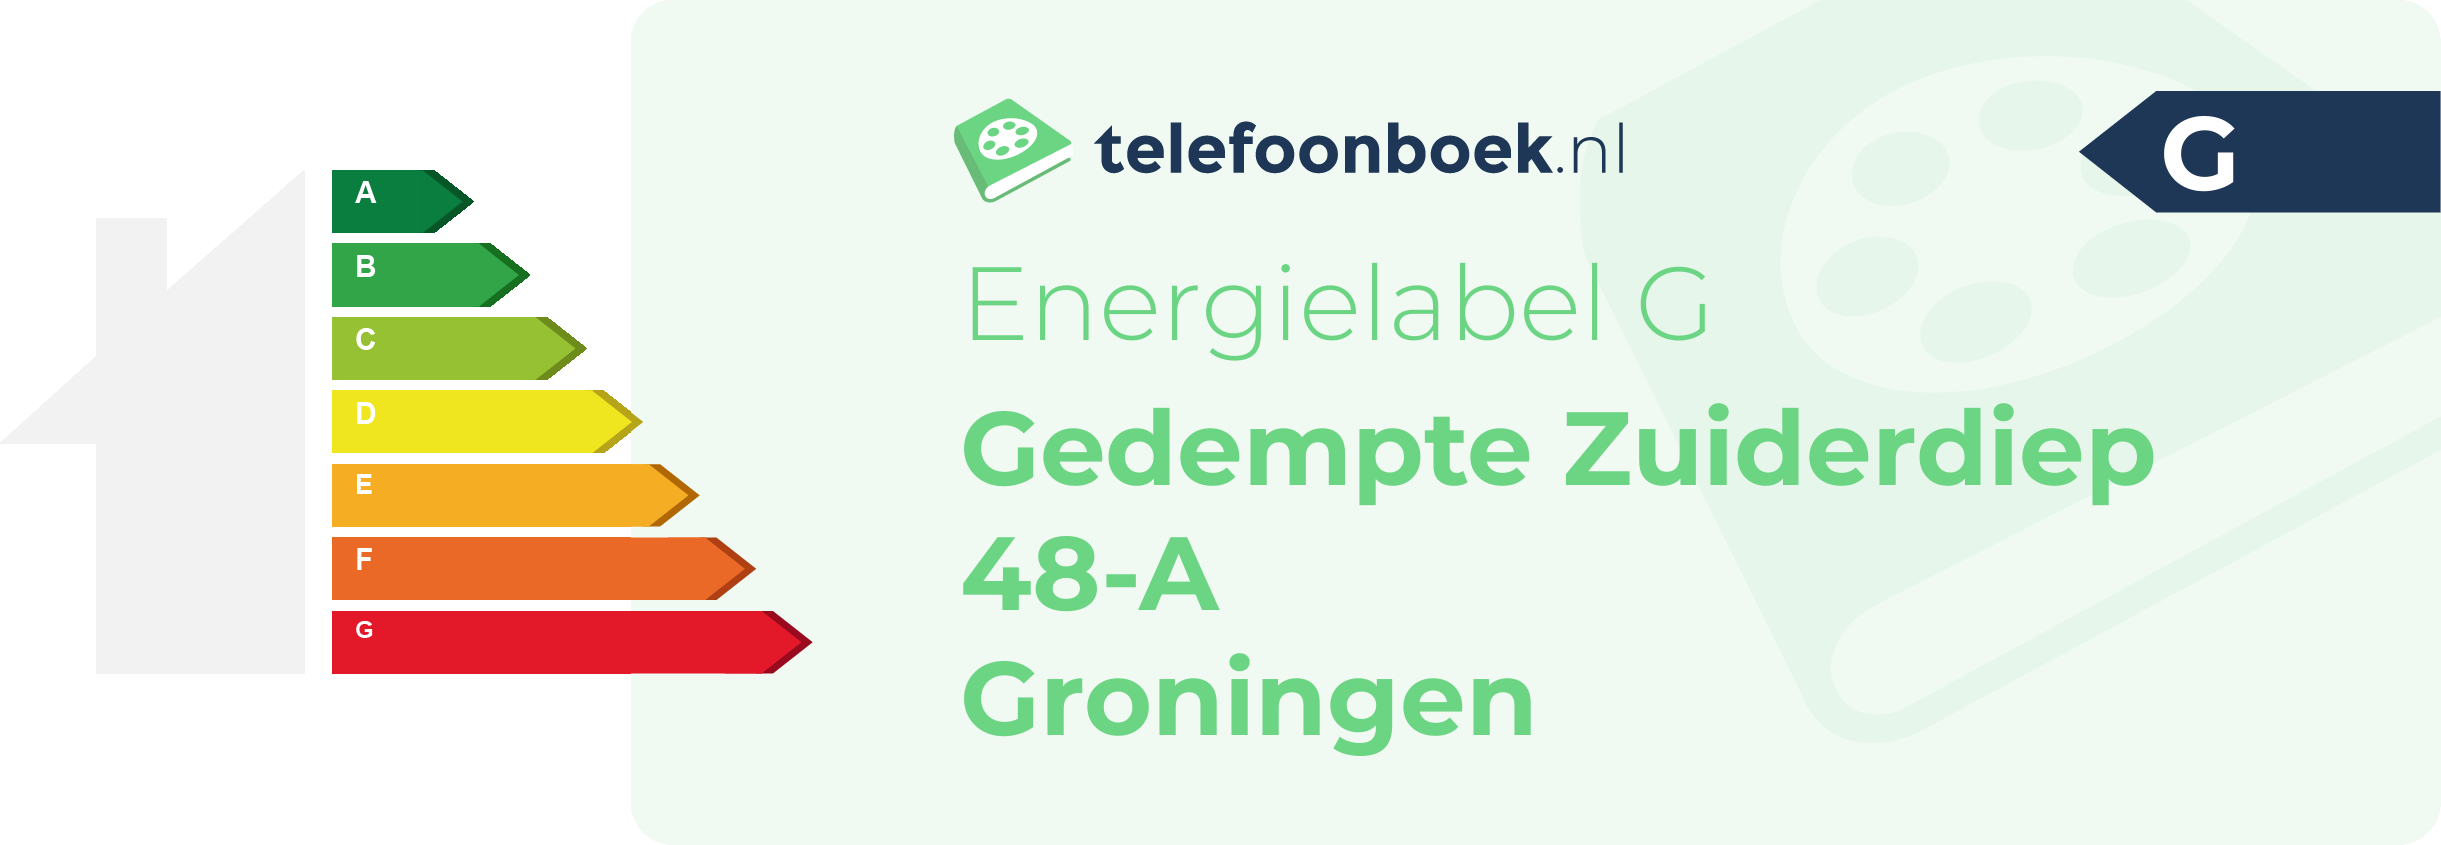 Energielabel Gedempte Zuiderdiep 48-A Groningen